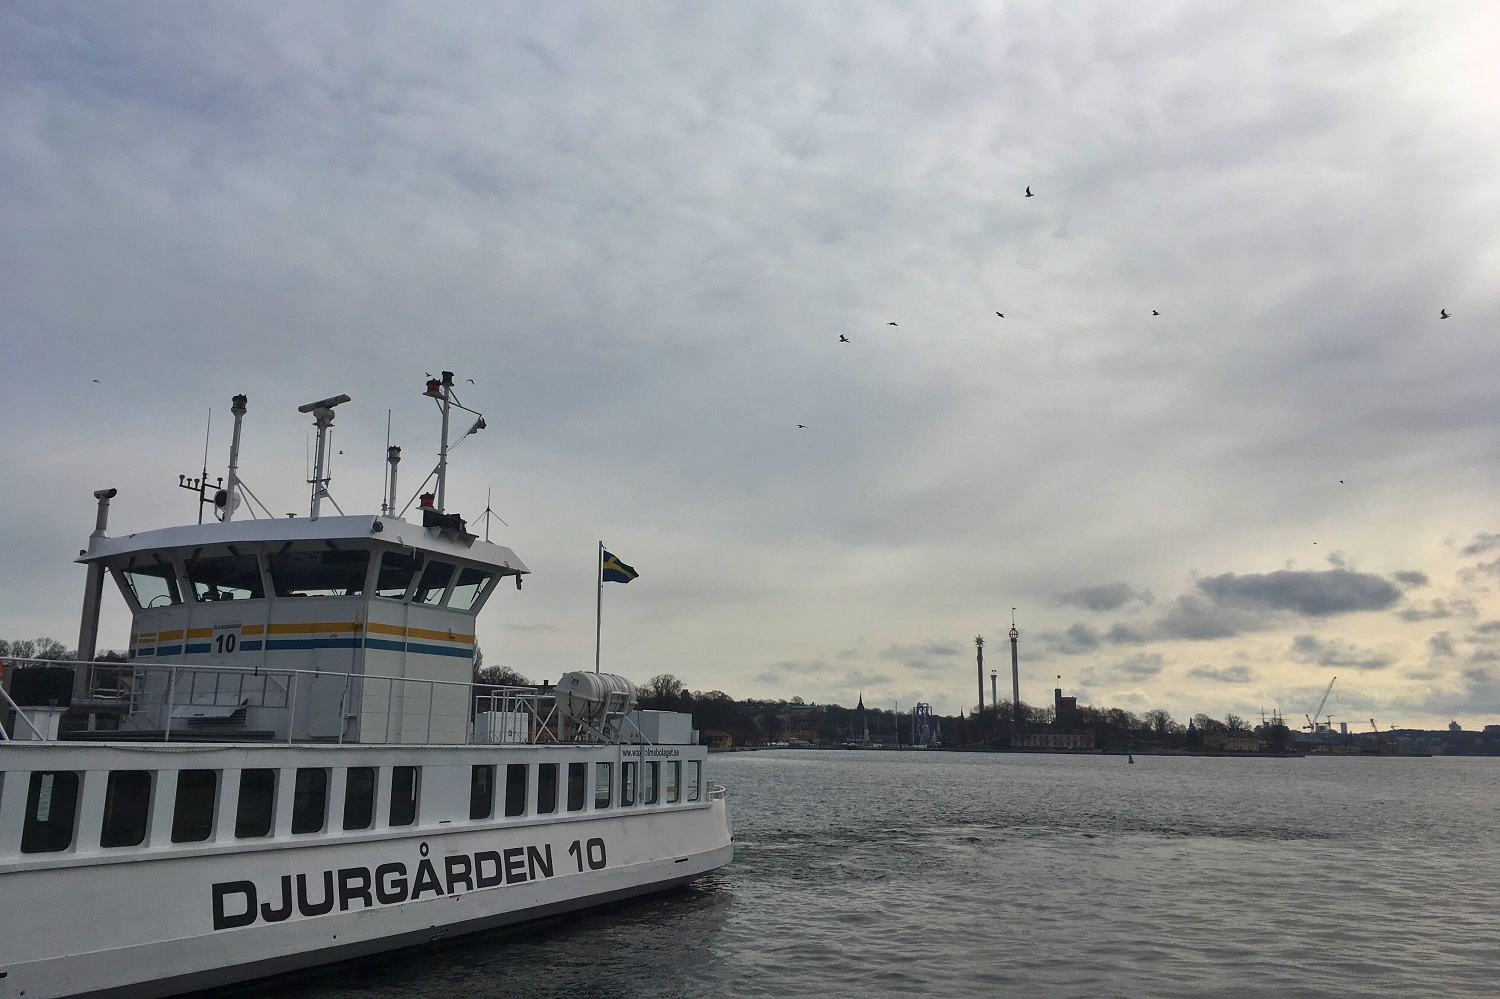 Djurgarden Ferry Stockholm at Slussen Ferry Pier